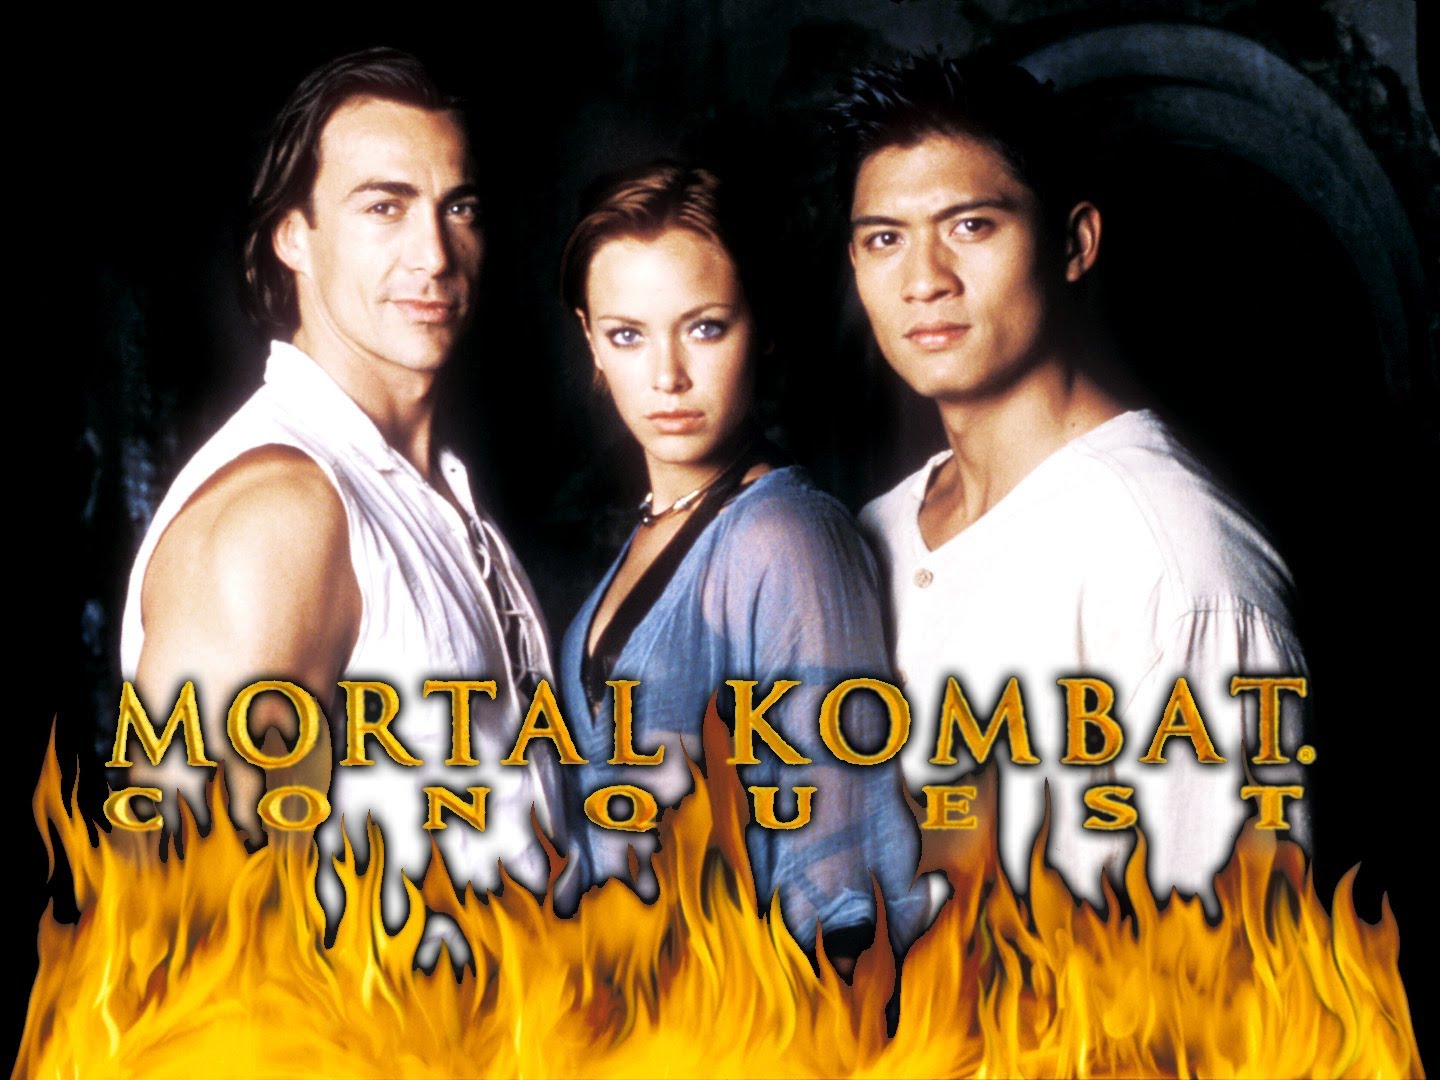 mortal kombat conquest episode 6 download